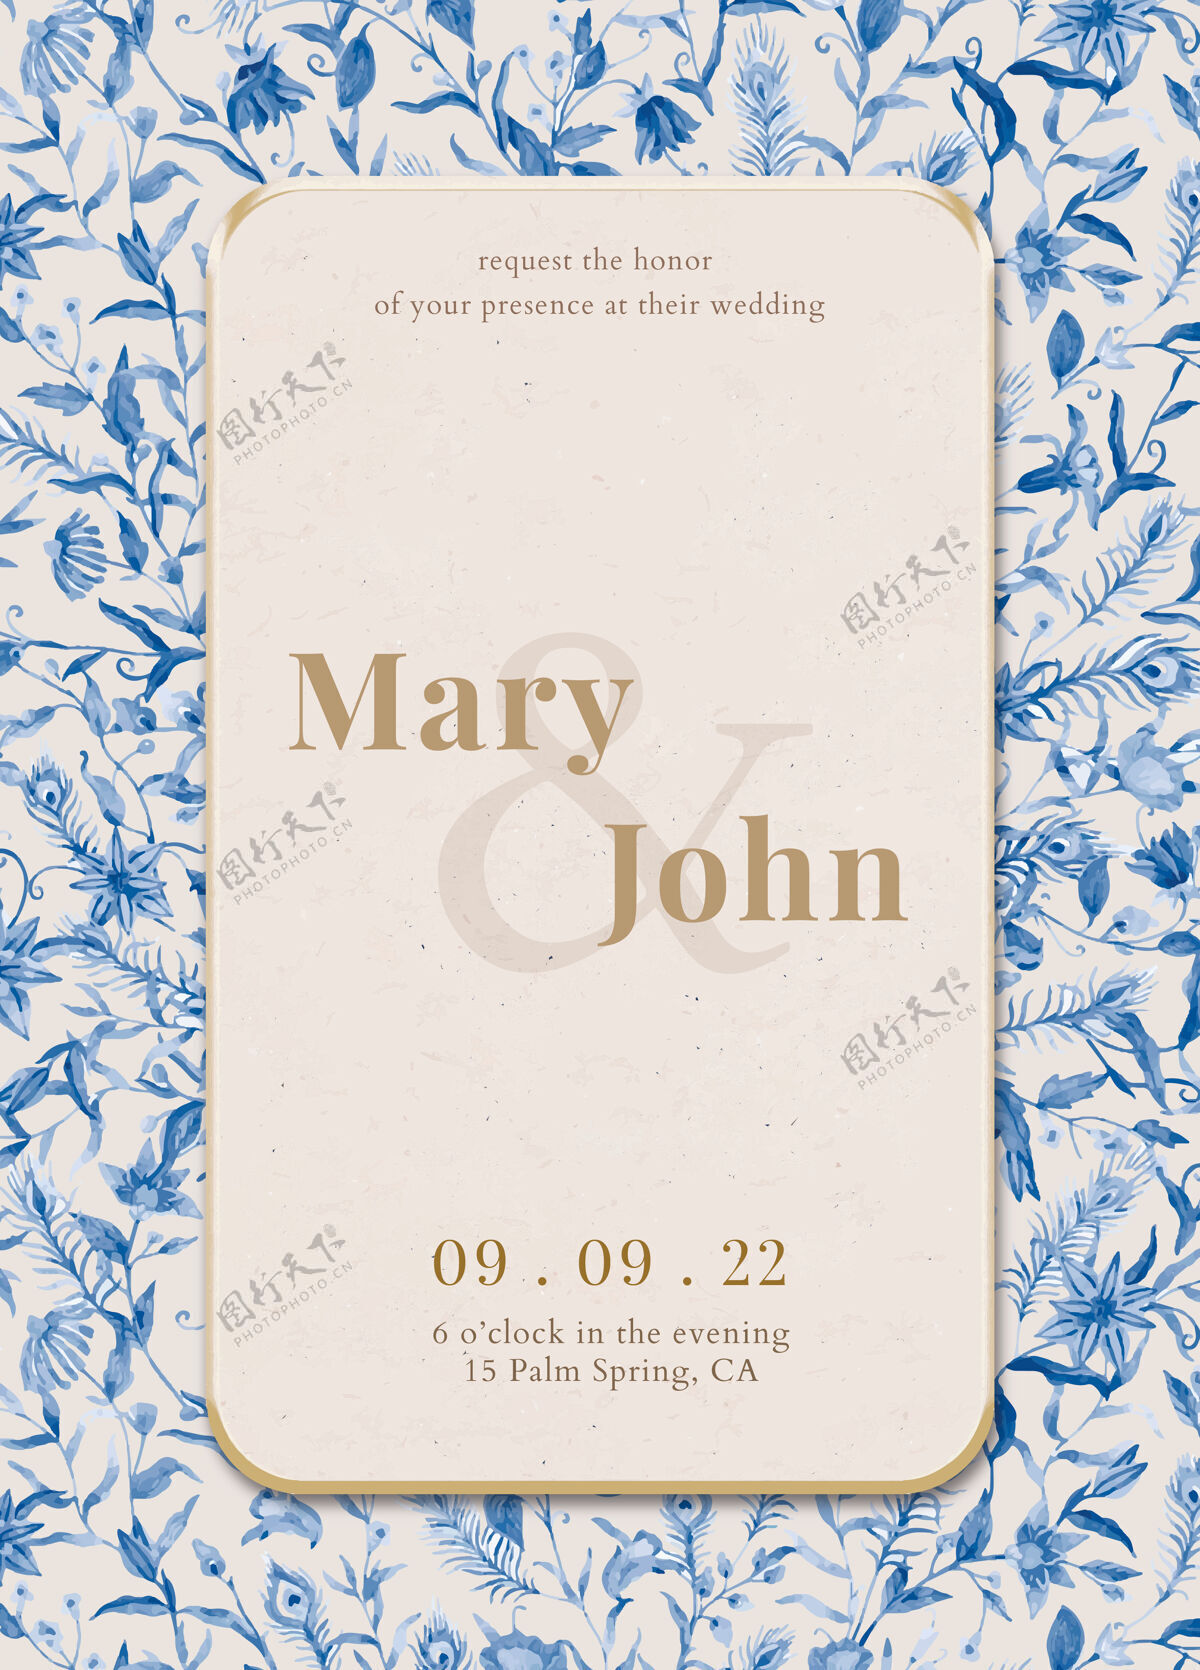 装饰品可编辑的邀请卡模板与水彩孔雀和鲜花插图保存日期相框婚礼请柬